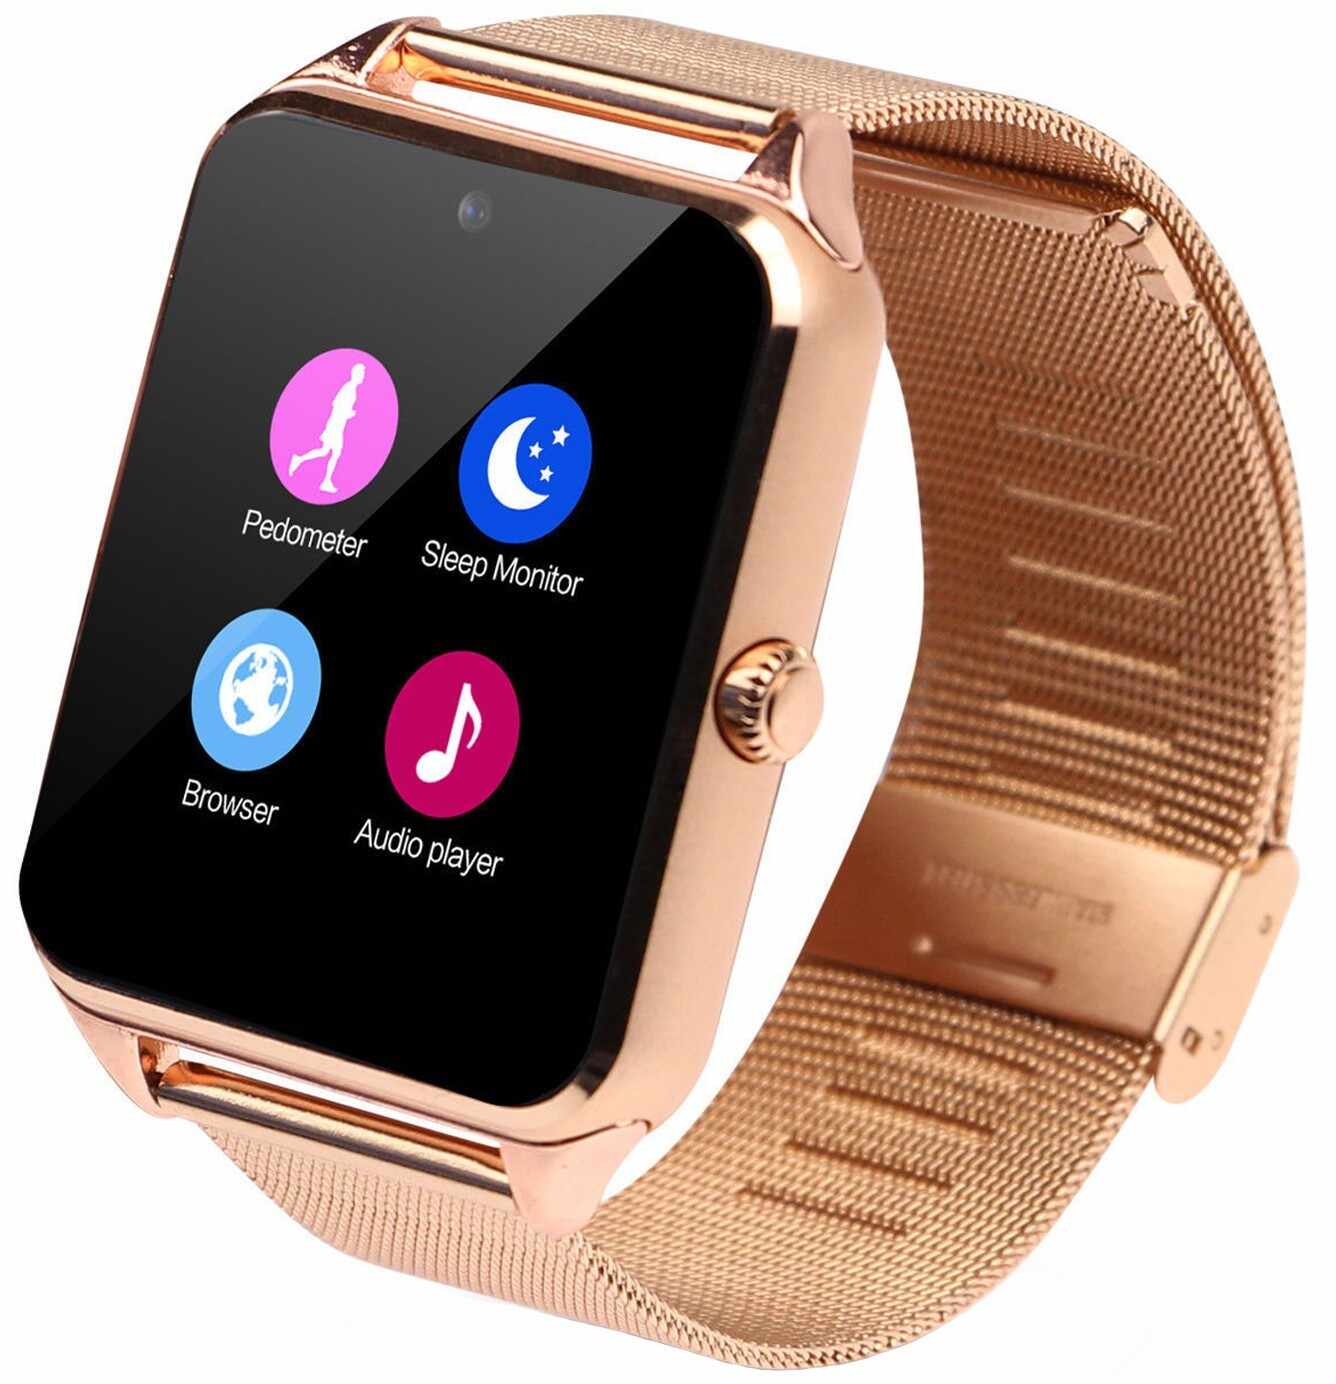 Ceas Smartwatch cu Telefon iUni Z60, Curea Metalica, Touchscreen, BT, Camera, Notificari, Gold